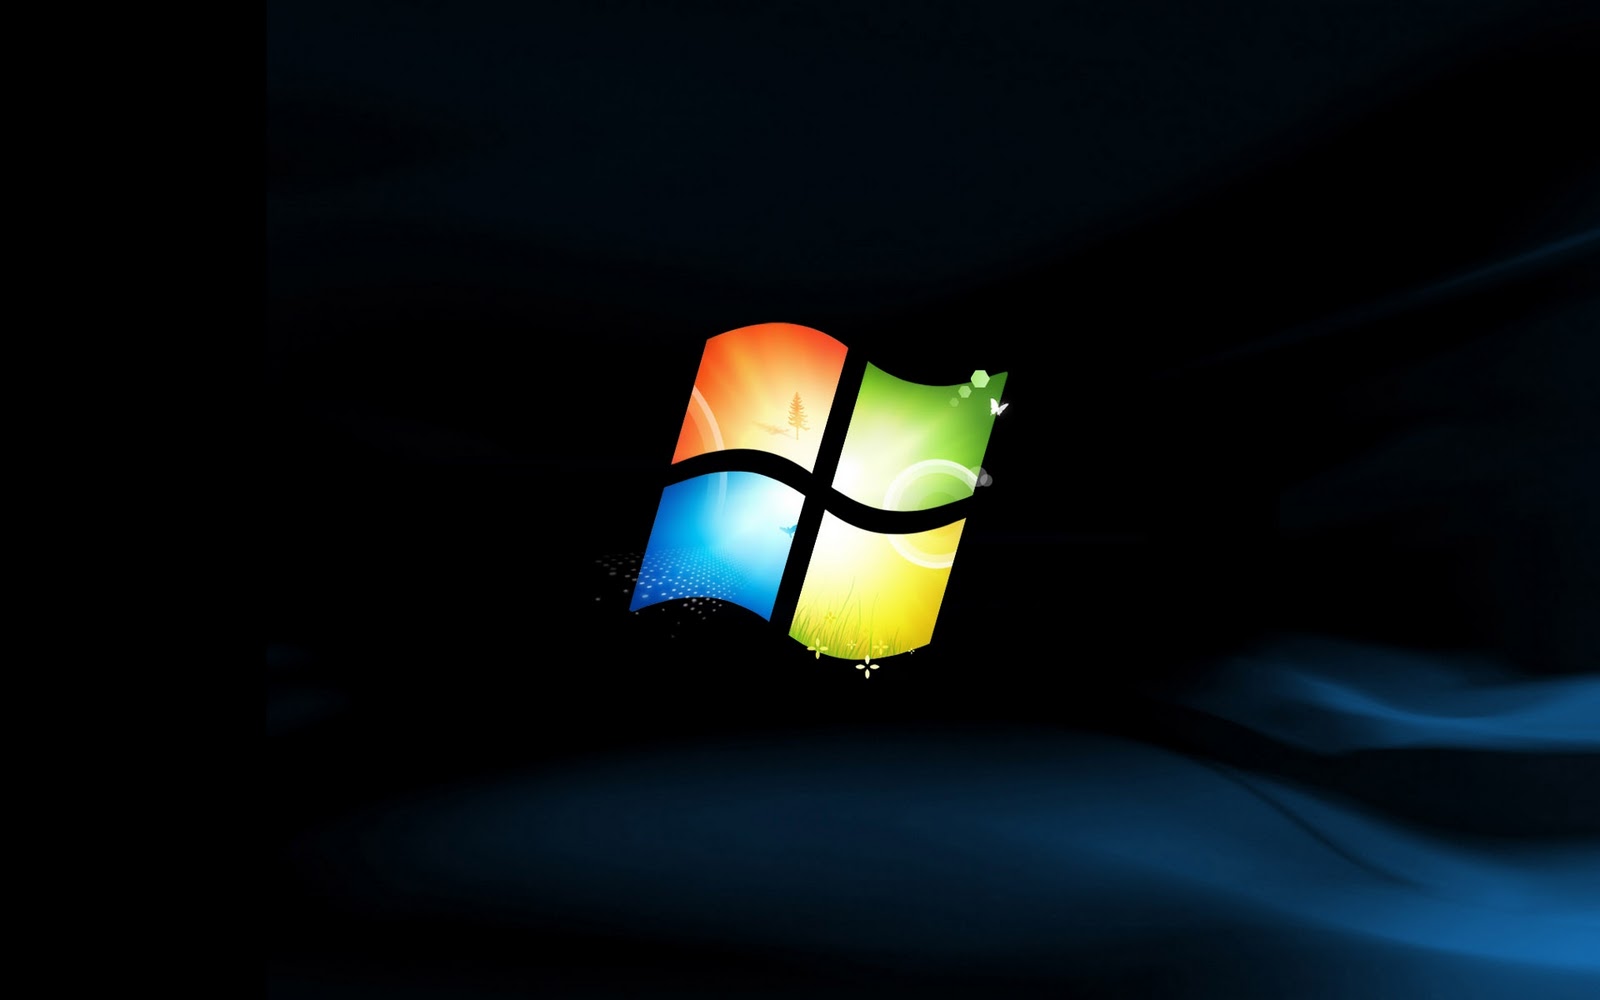 Windows 7 achtergronden sẽ khiến cho màn hình desktop của bạn trở nên sinh động và tươi sáng hơn bao giờ hết với những hình ảnh đẹp như tranh vẽ. Hãy cùng tải về và trải nghiệm ngay!